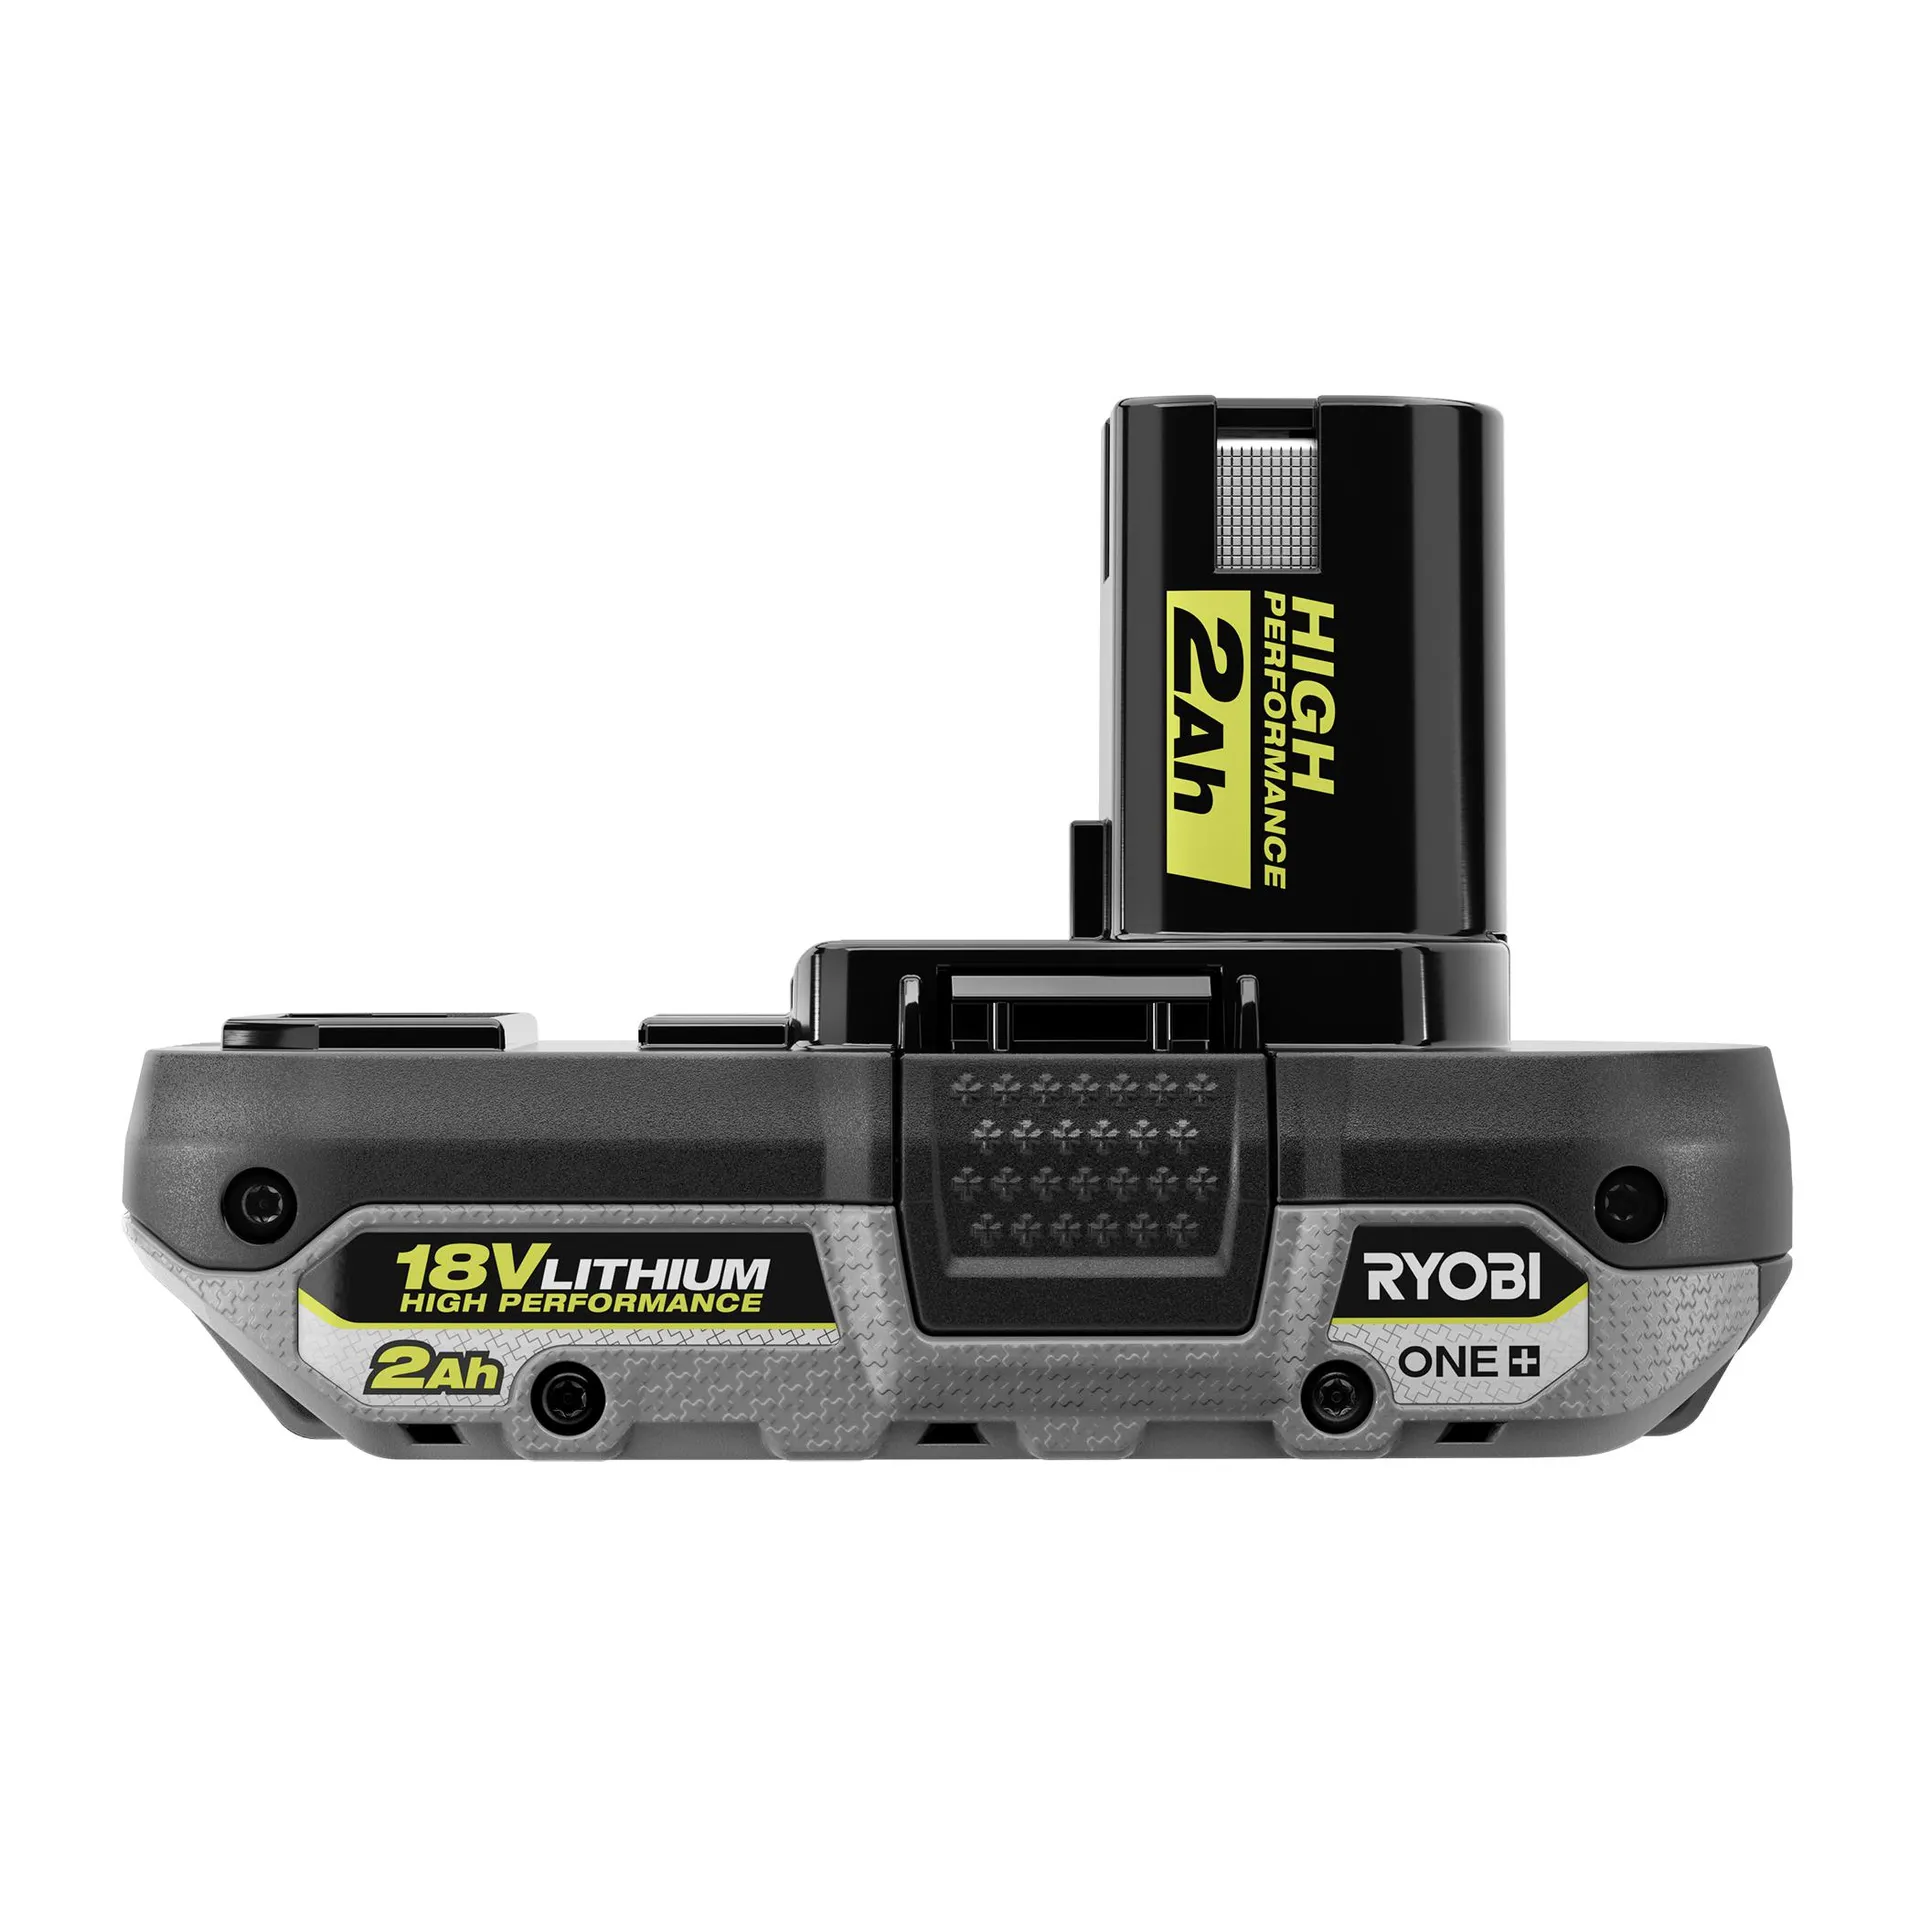 18V ONE+ HP Brushless 1/2" Drill/Driver Kit